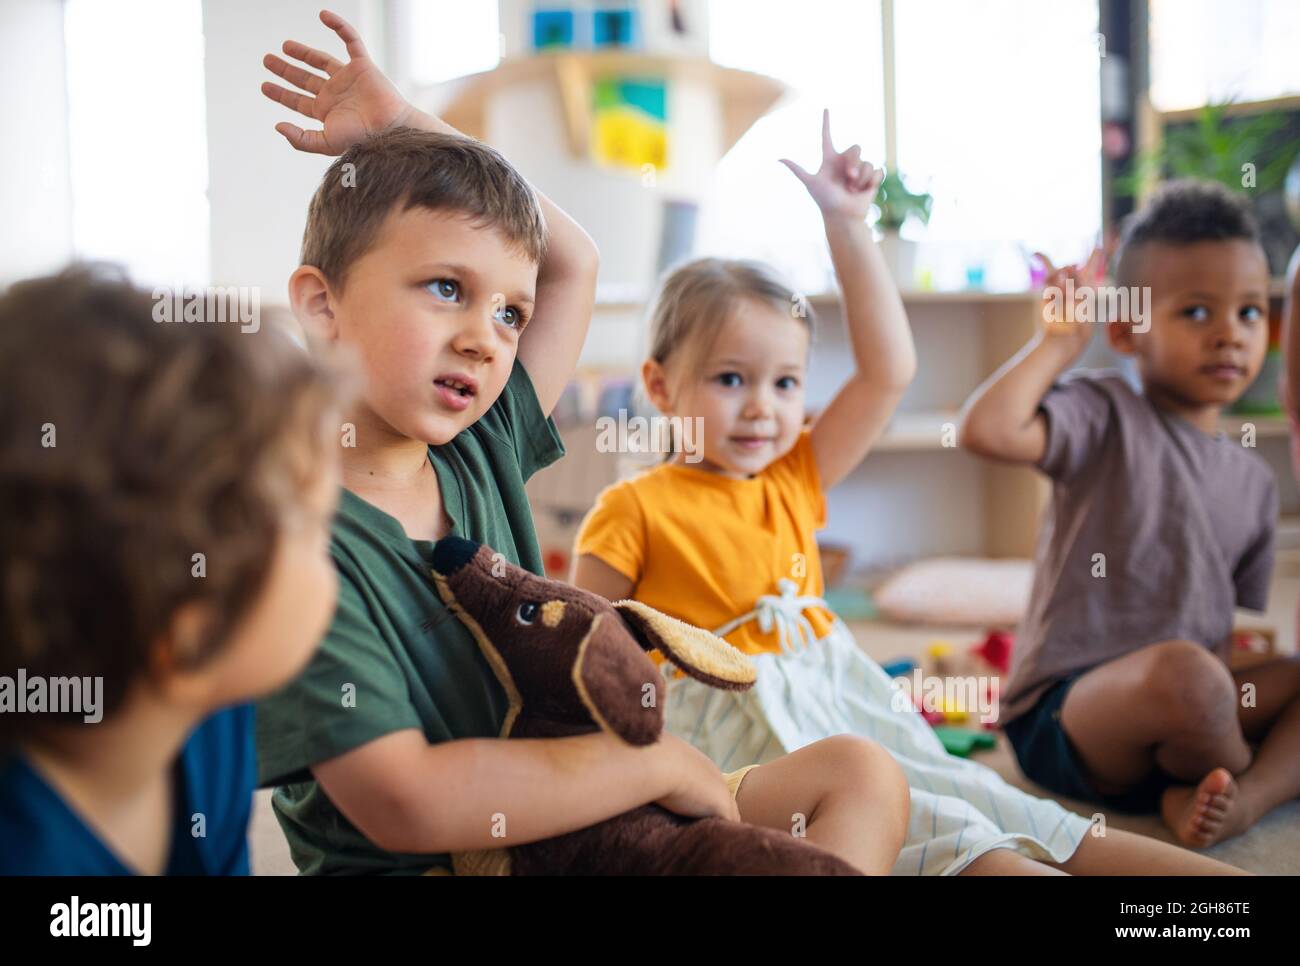 Groupe de petits enfants de la maternelle assis sur le sol à l'intérieur dans la salle de classe, levant les mains. Banque D'Images